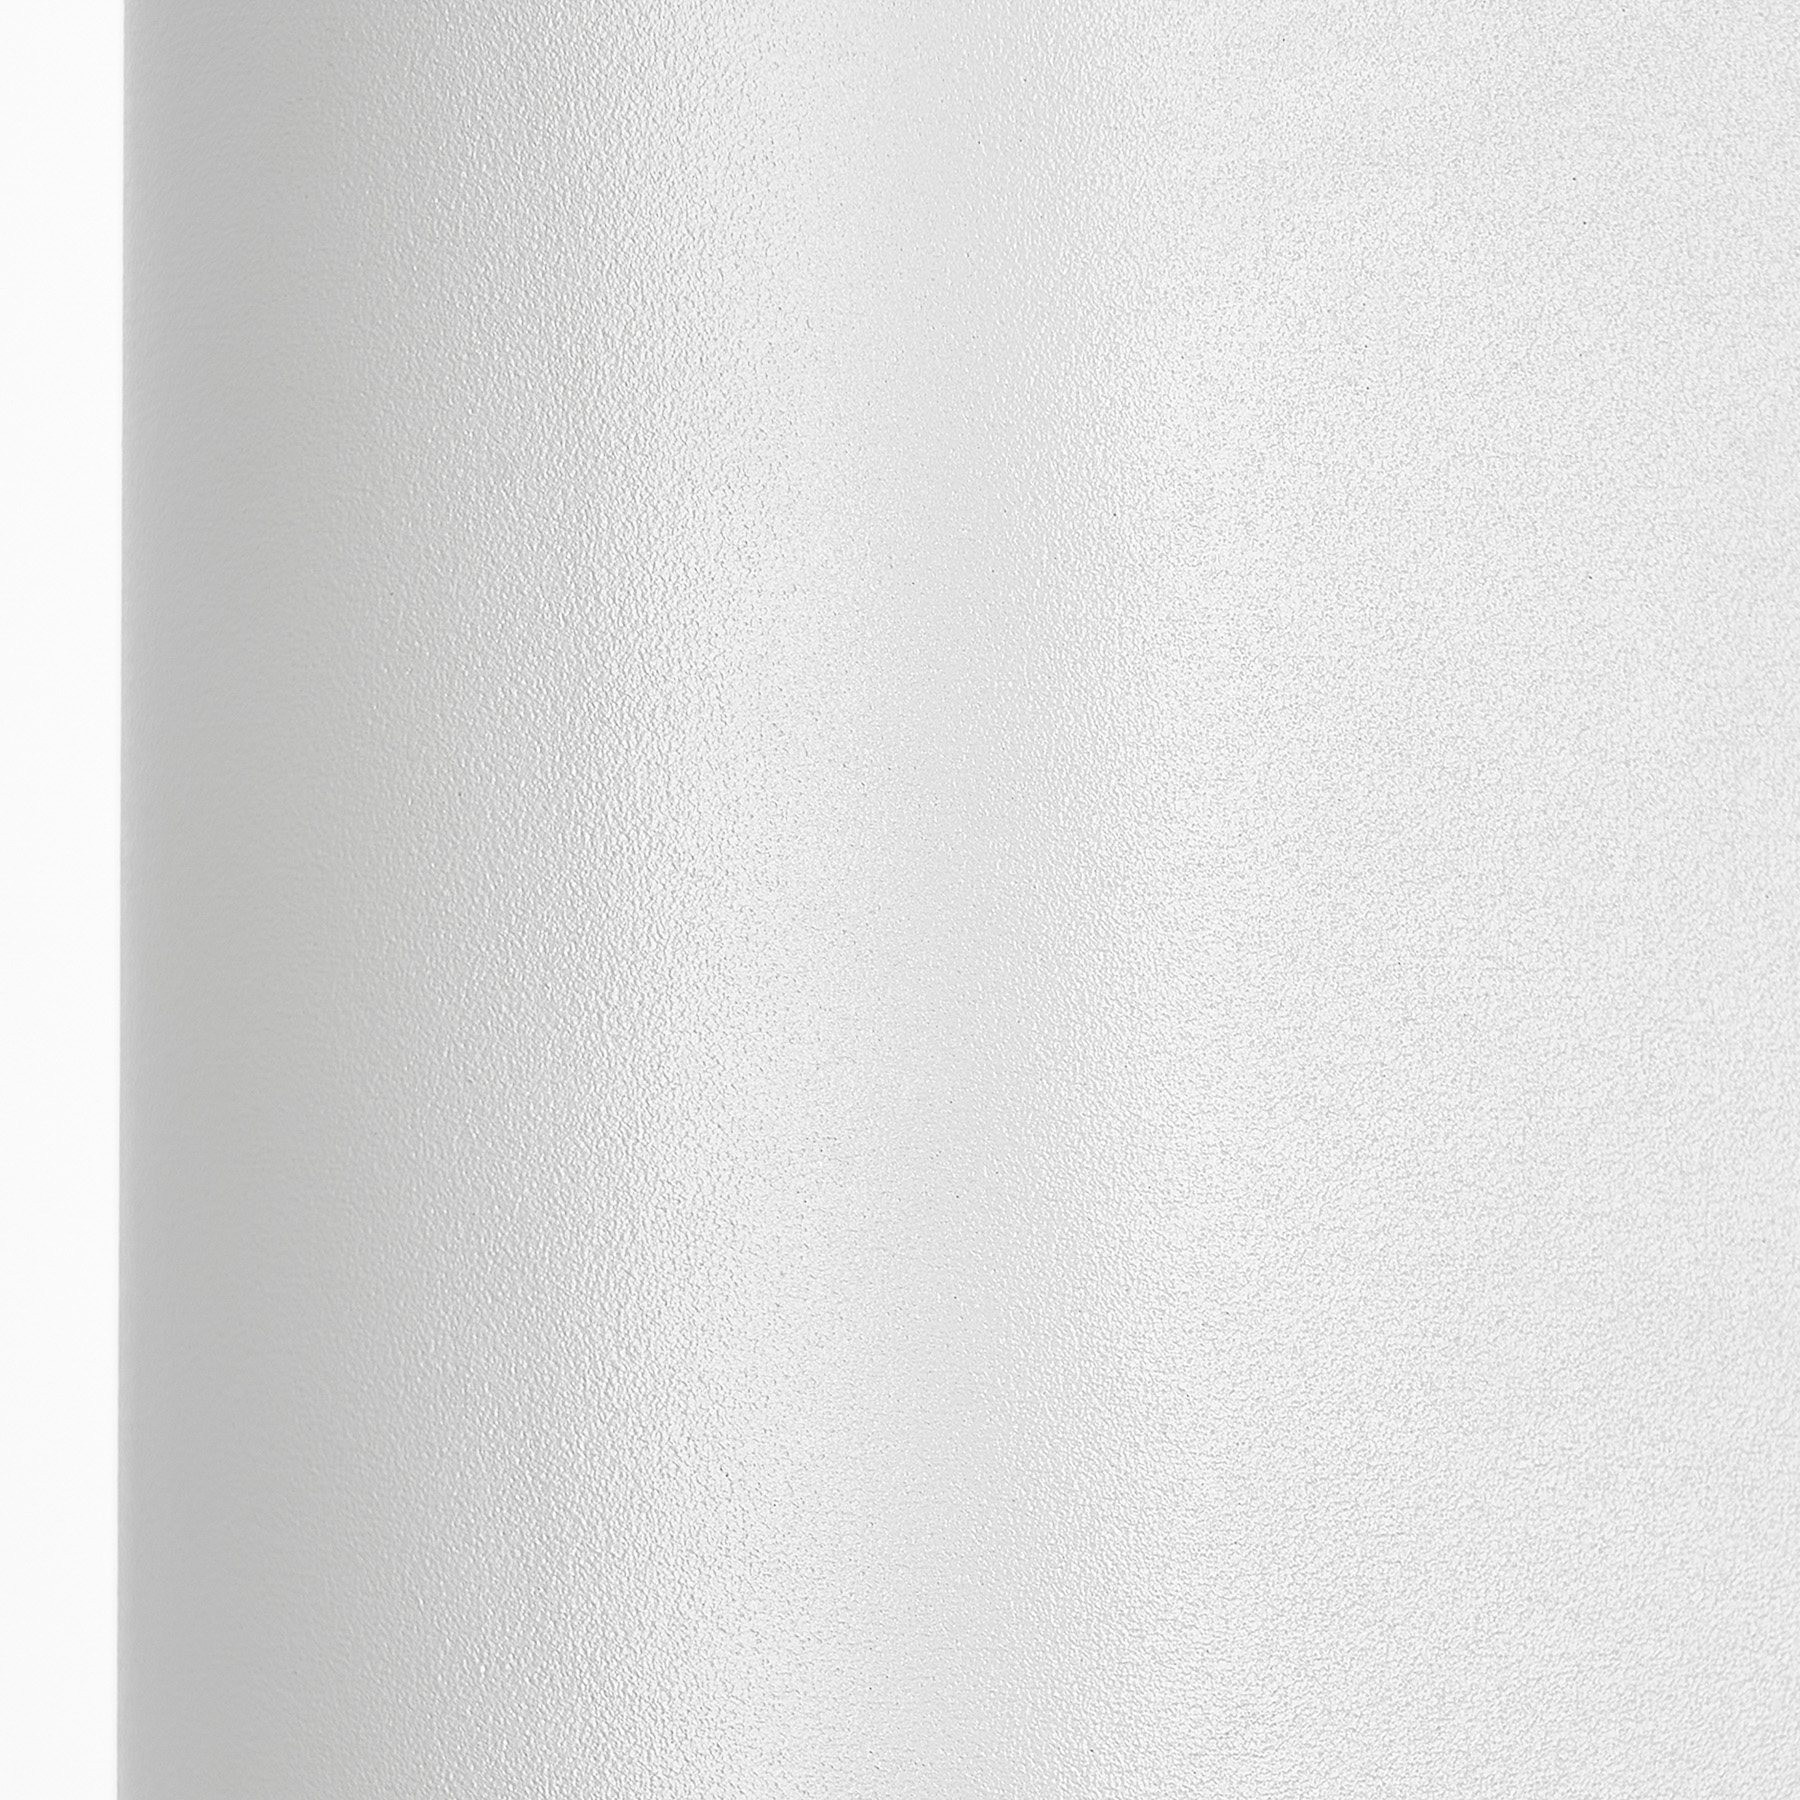 Prios vanjska zidna svjetiljka Tetje, bijela, okrugla, 16 cm, set 4 kom